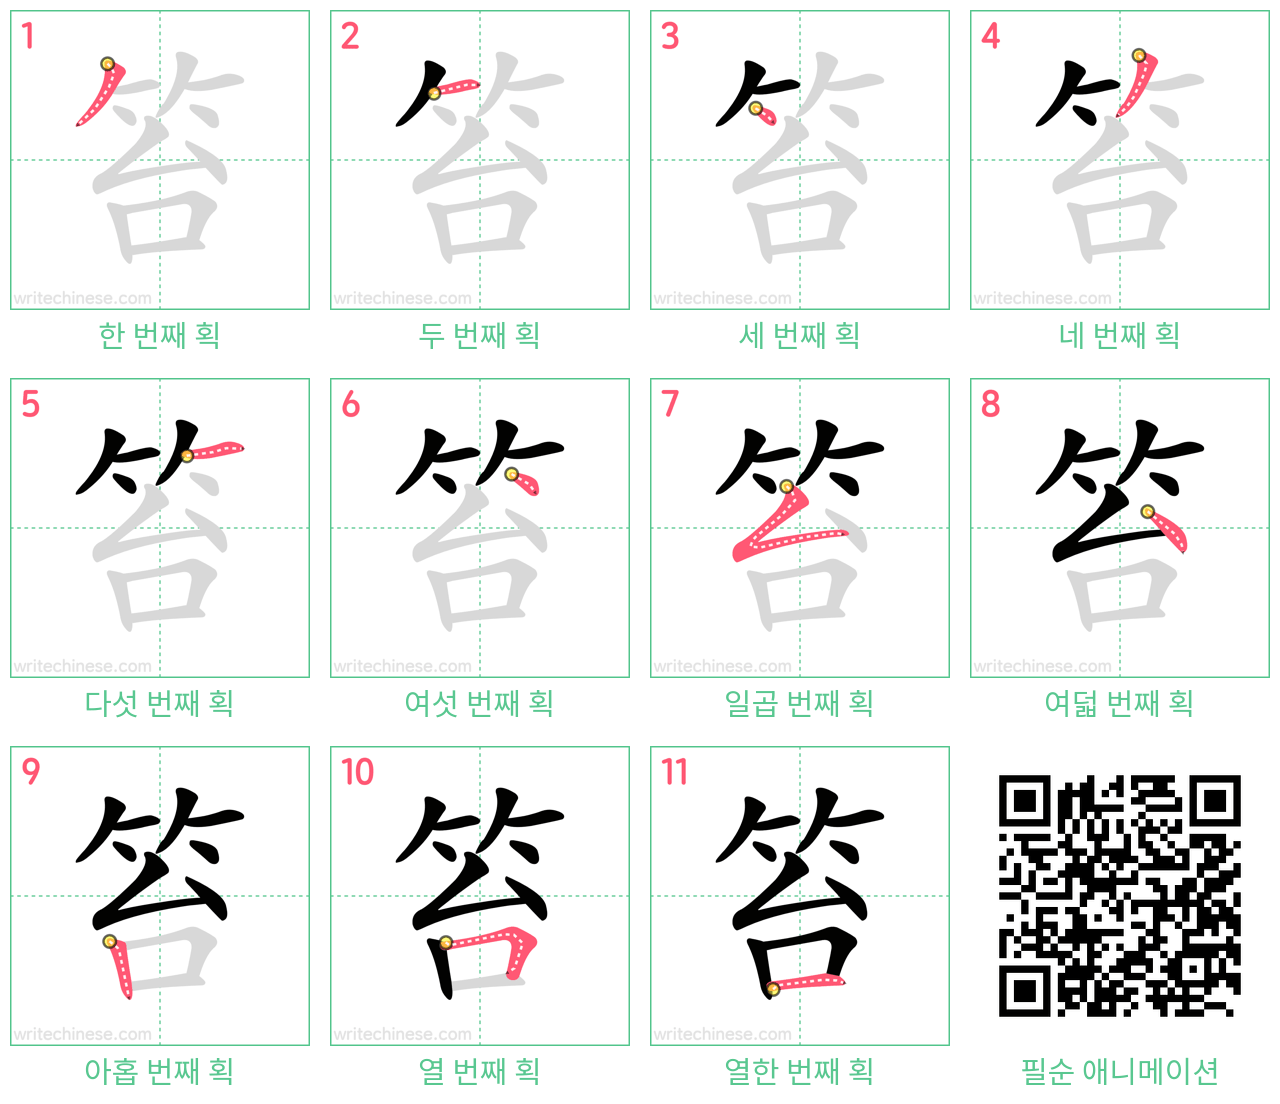 笞 step-by-step stroke order diagrams